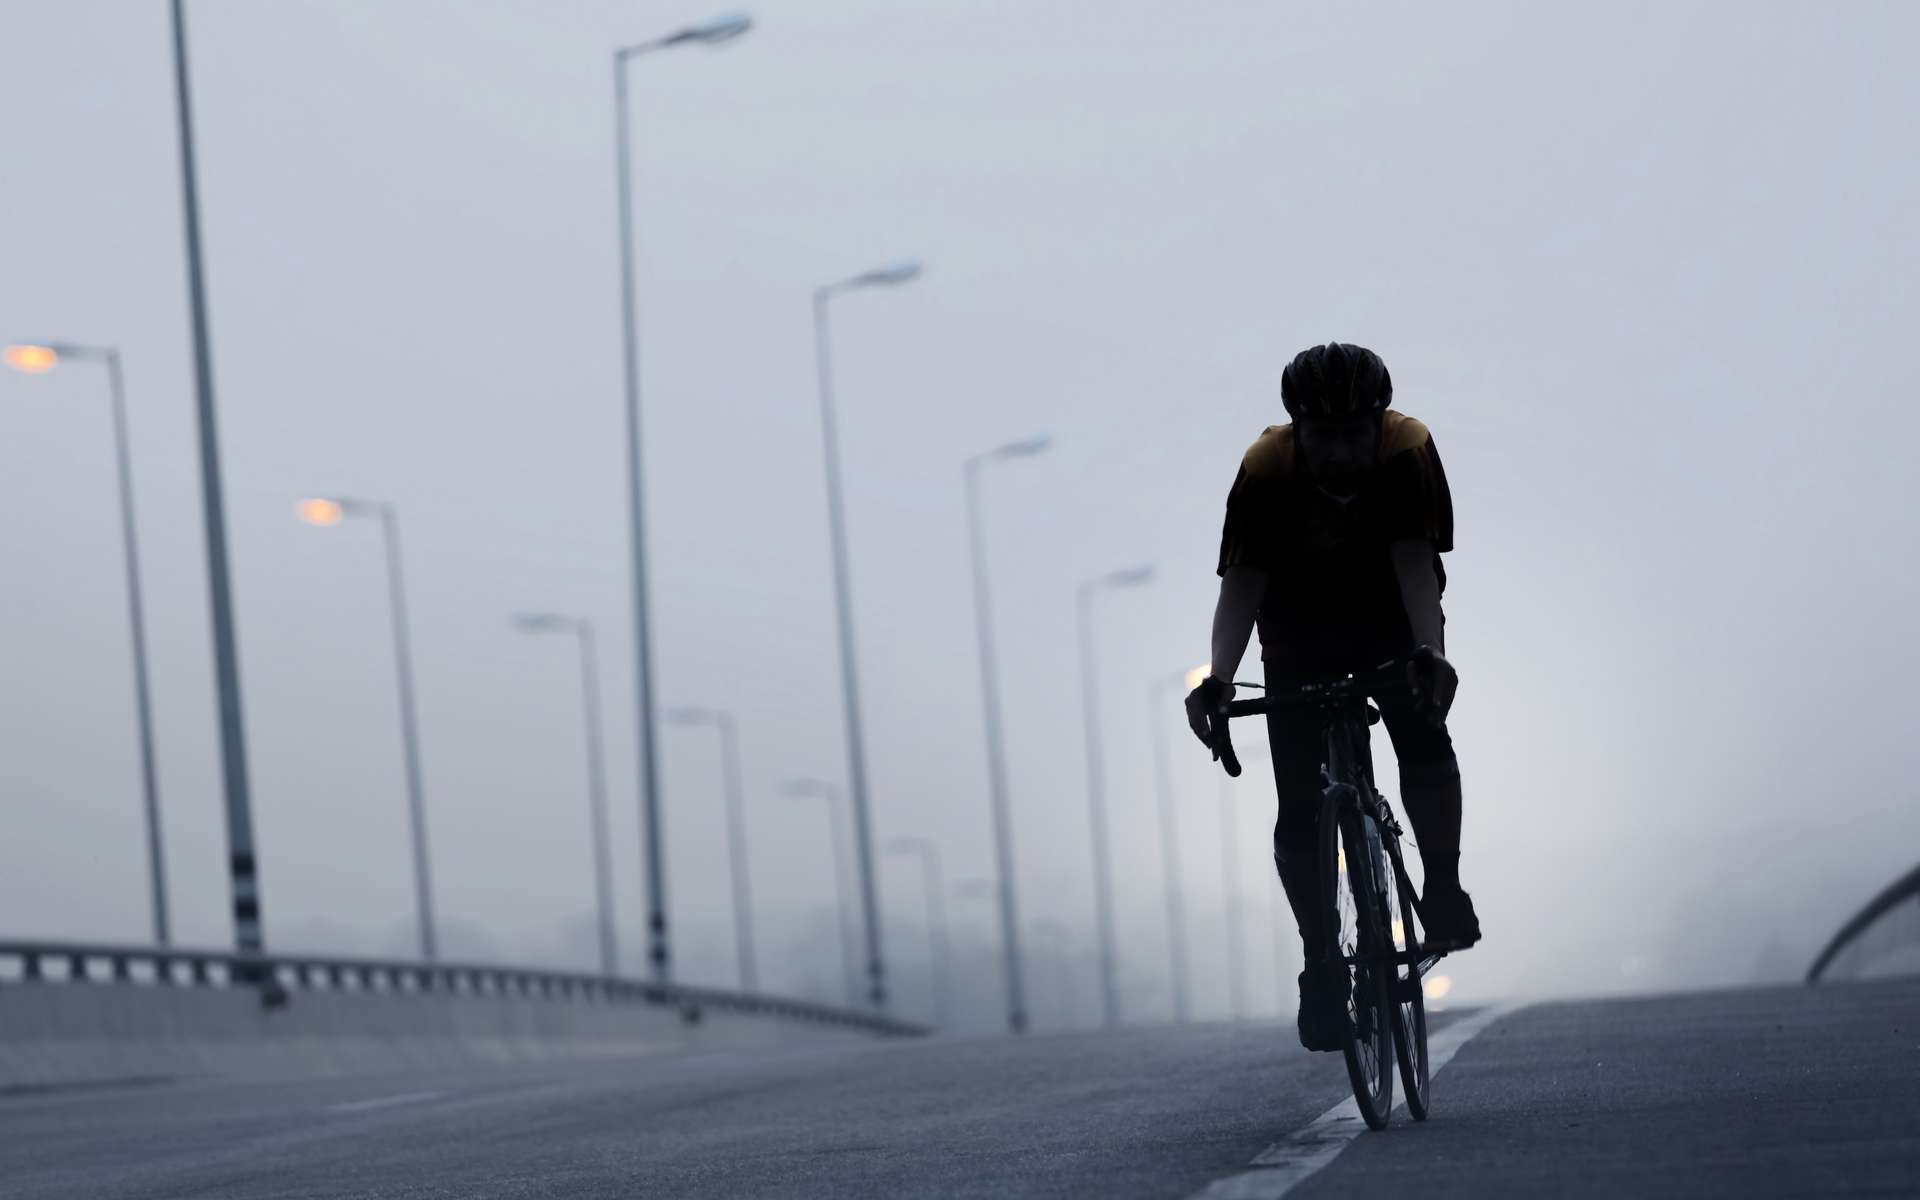 Les cyclistes inhalent deux plus de polluants que lorsqu'ils sont dans leur lieu de résidence, selon une étude. © chokchaipoo, Adobe Stock